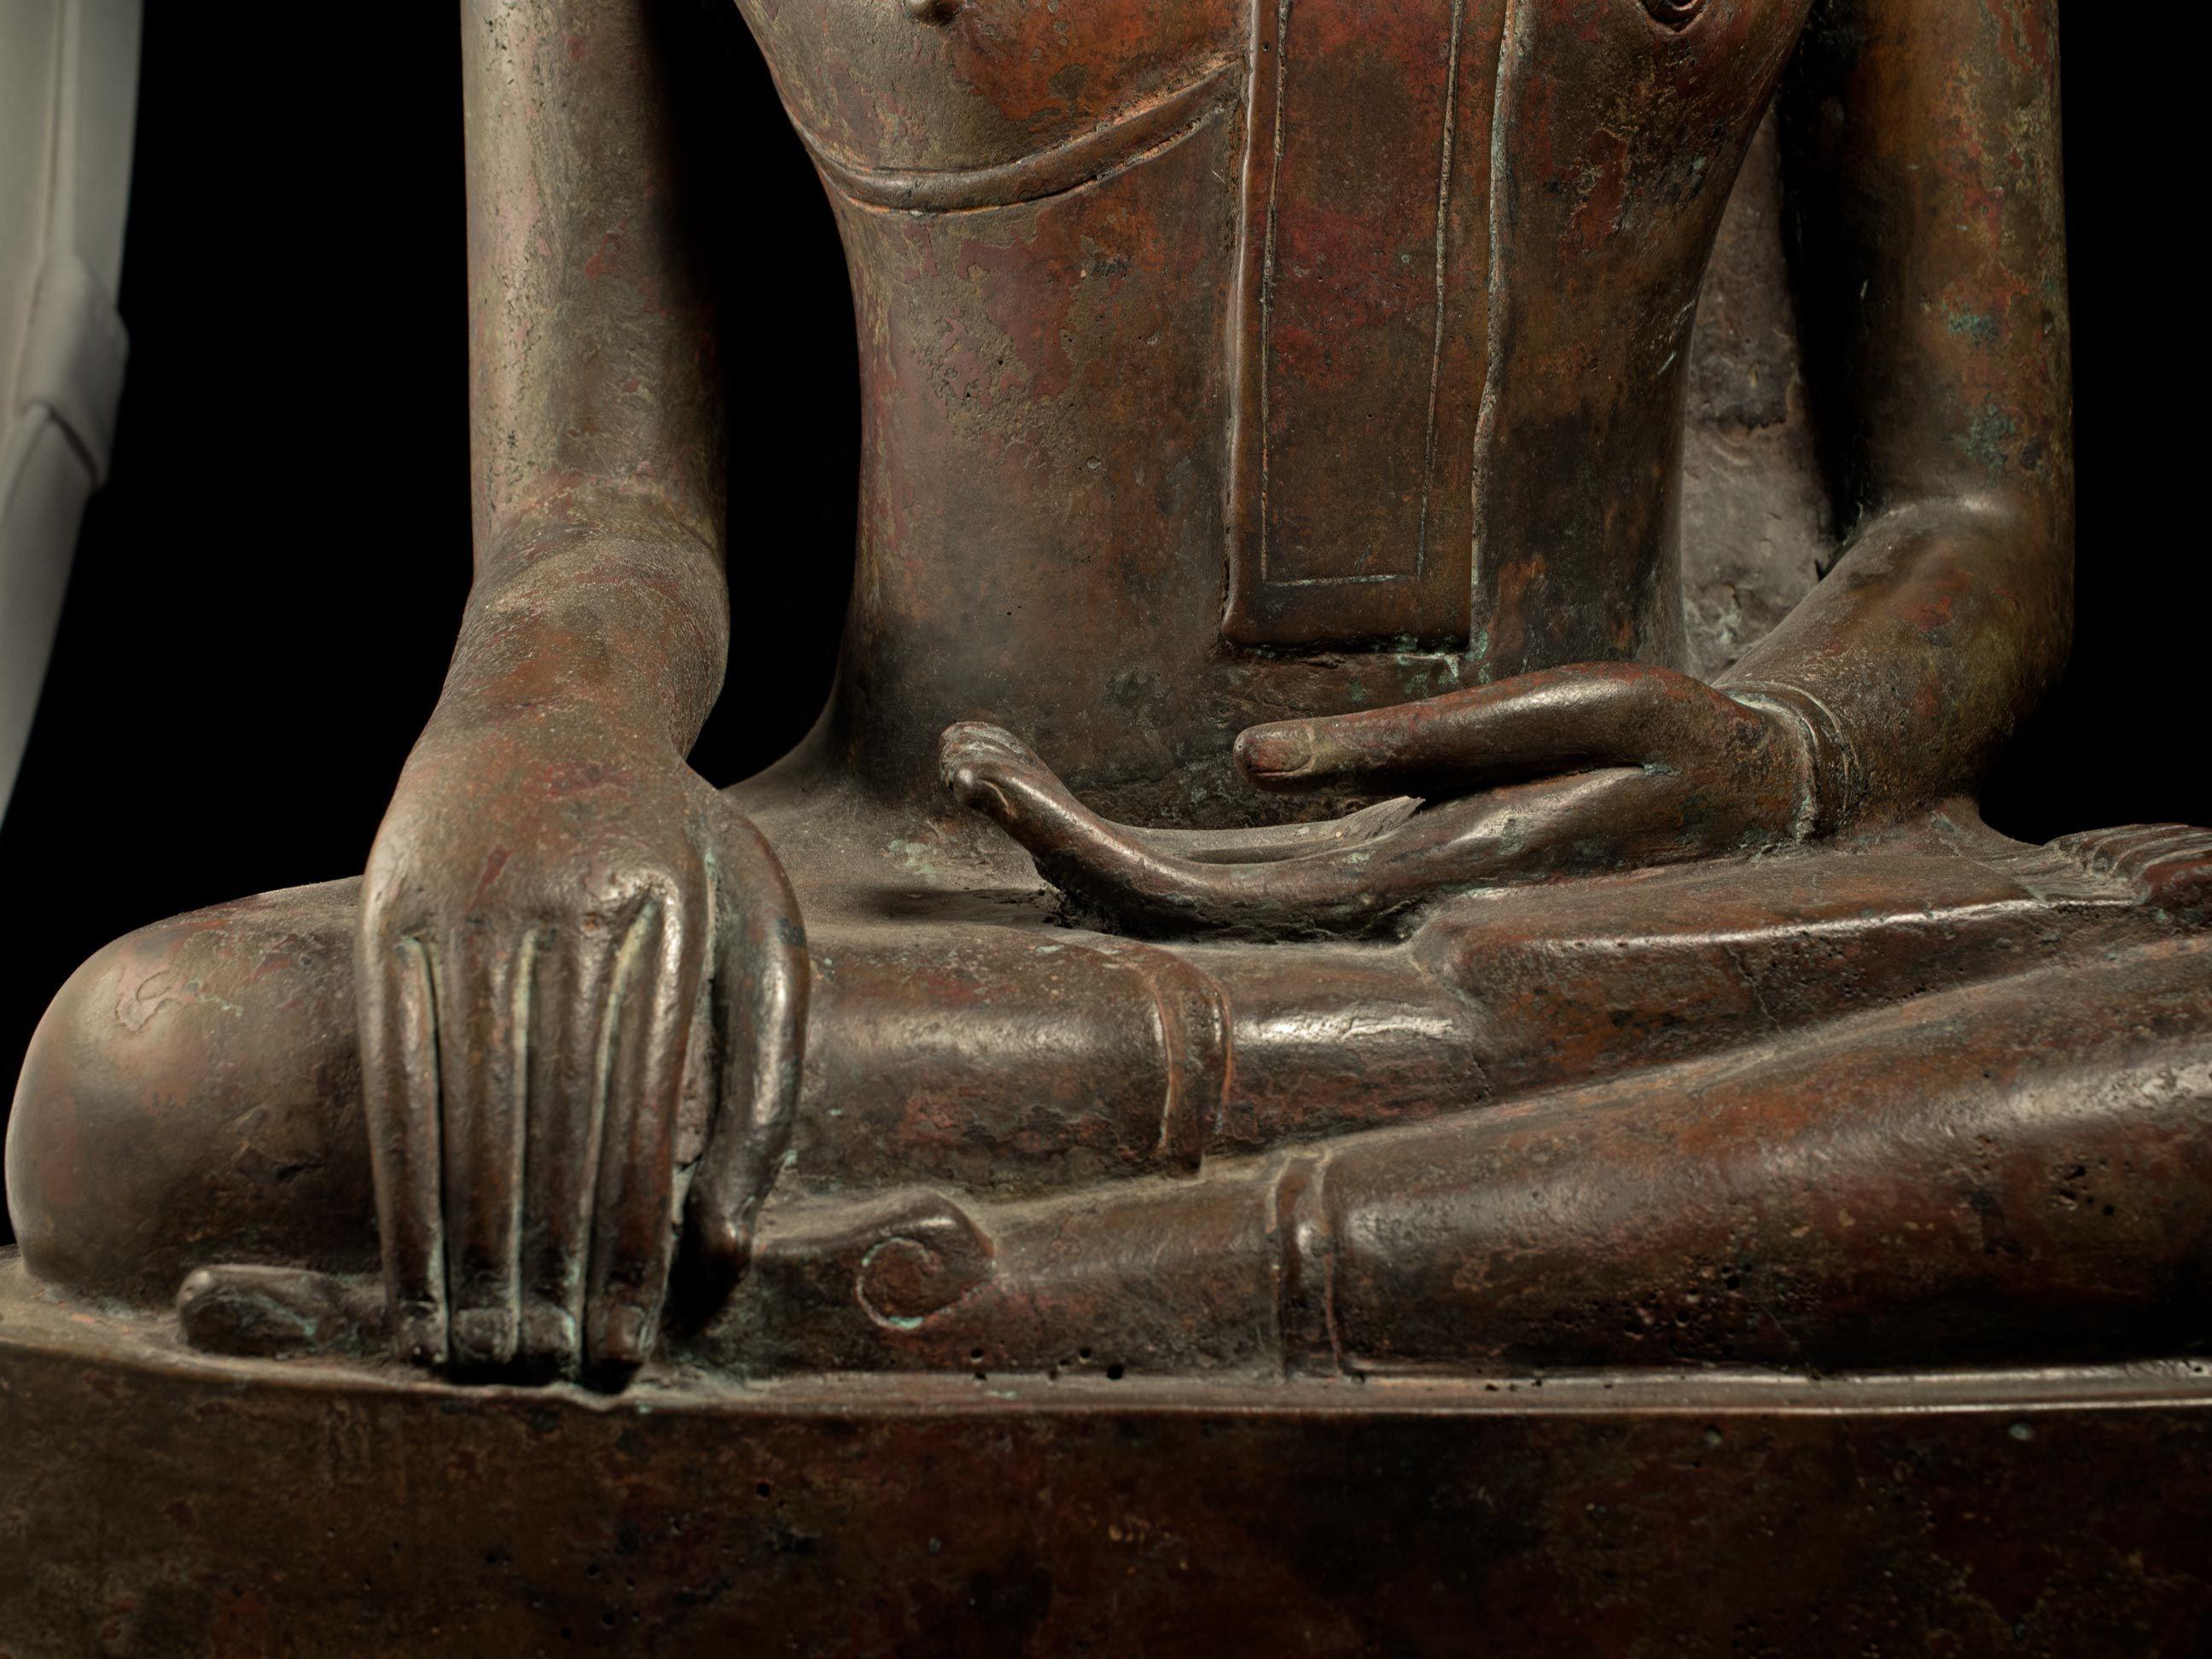 Grand royaume de Bouddha en bronze du 18/19e siècle de Nan dans le nord-est de la Thaïlande - 8961 7